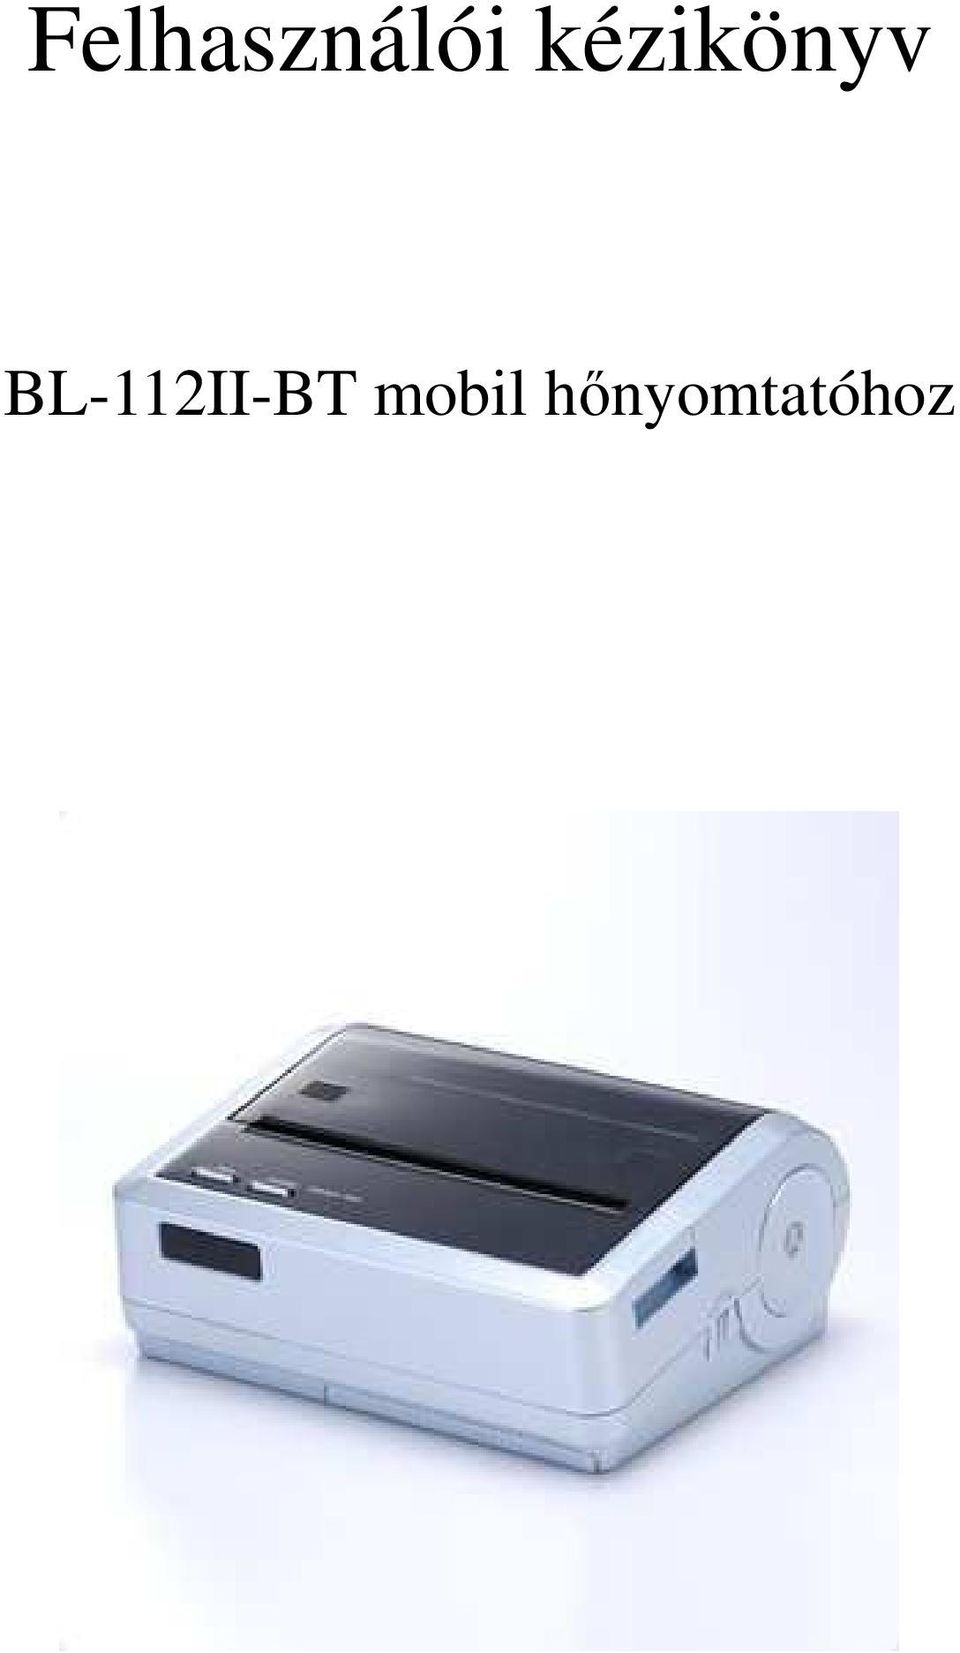 BL-112II-BT